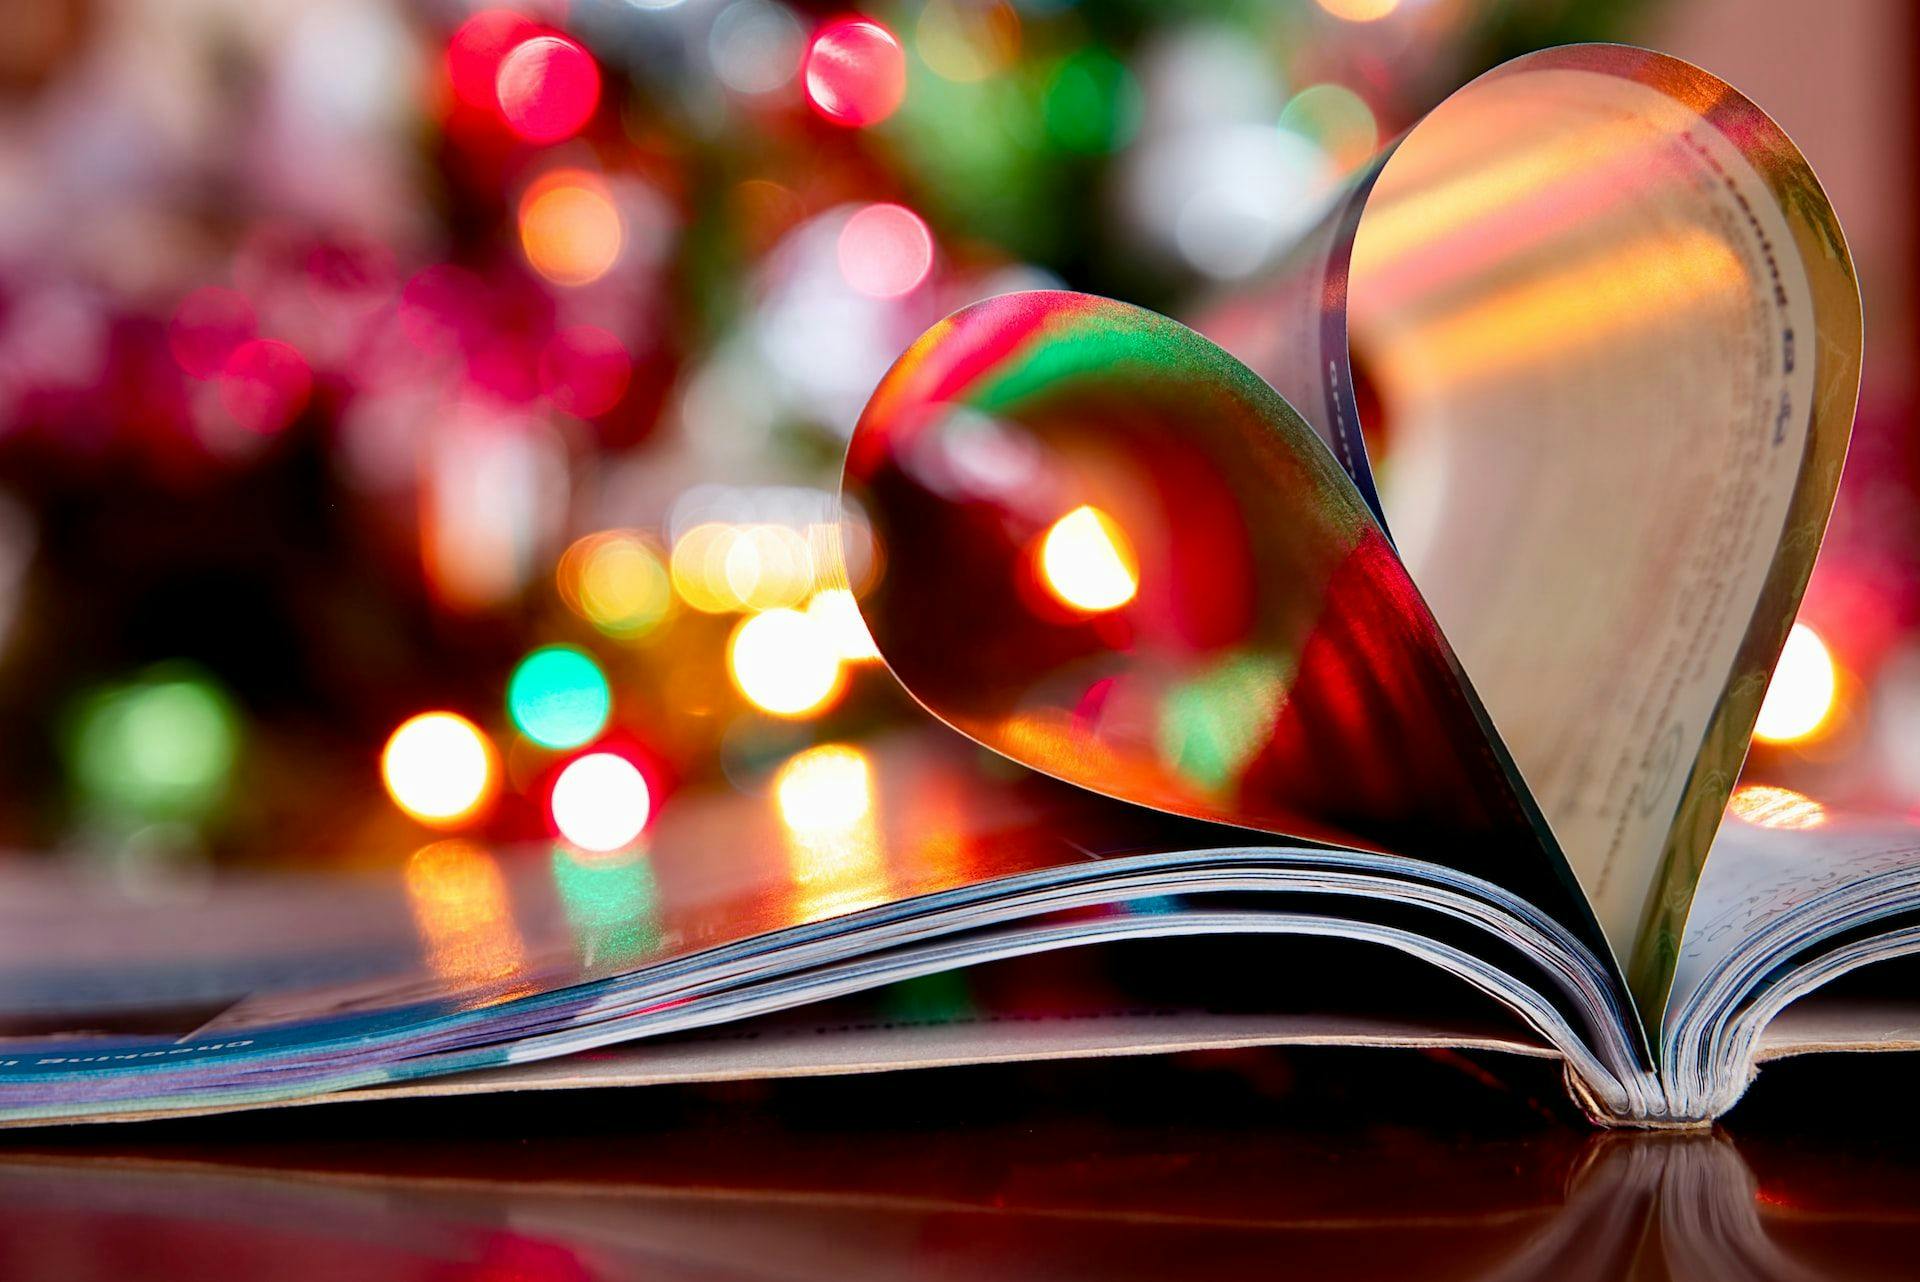 Книги — популярный подарок на Рождество в Люксембурге